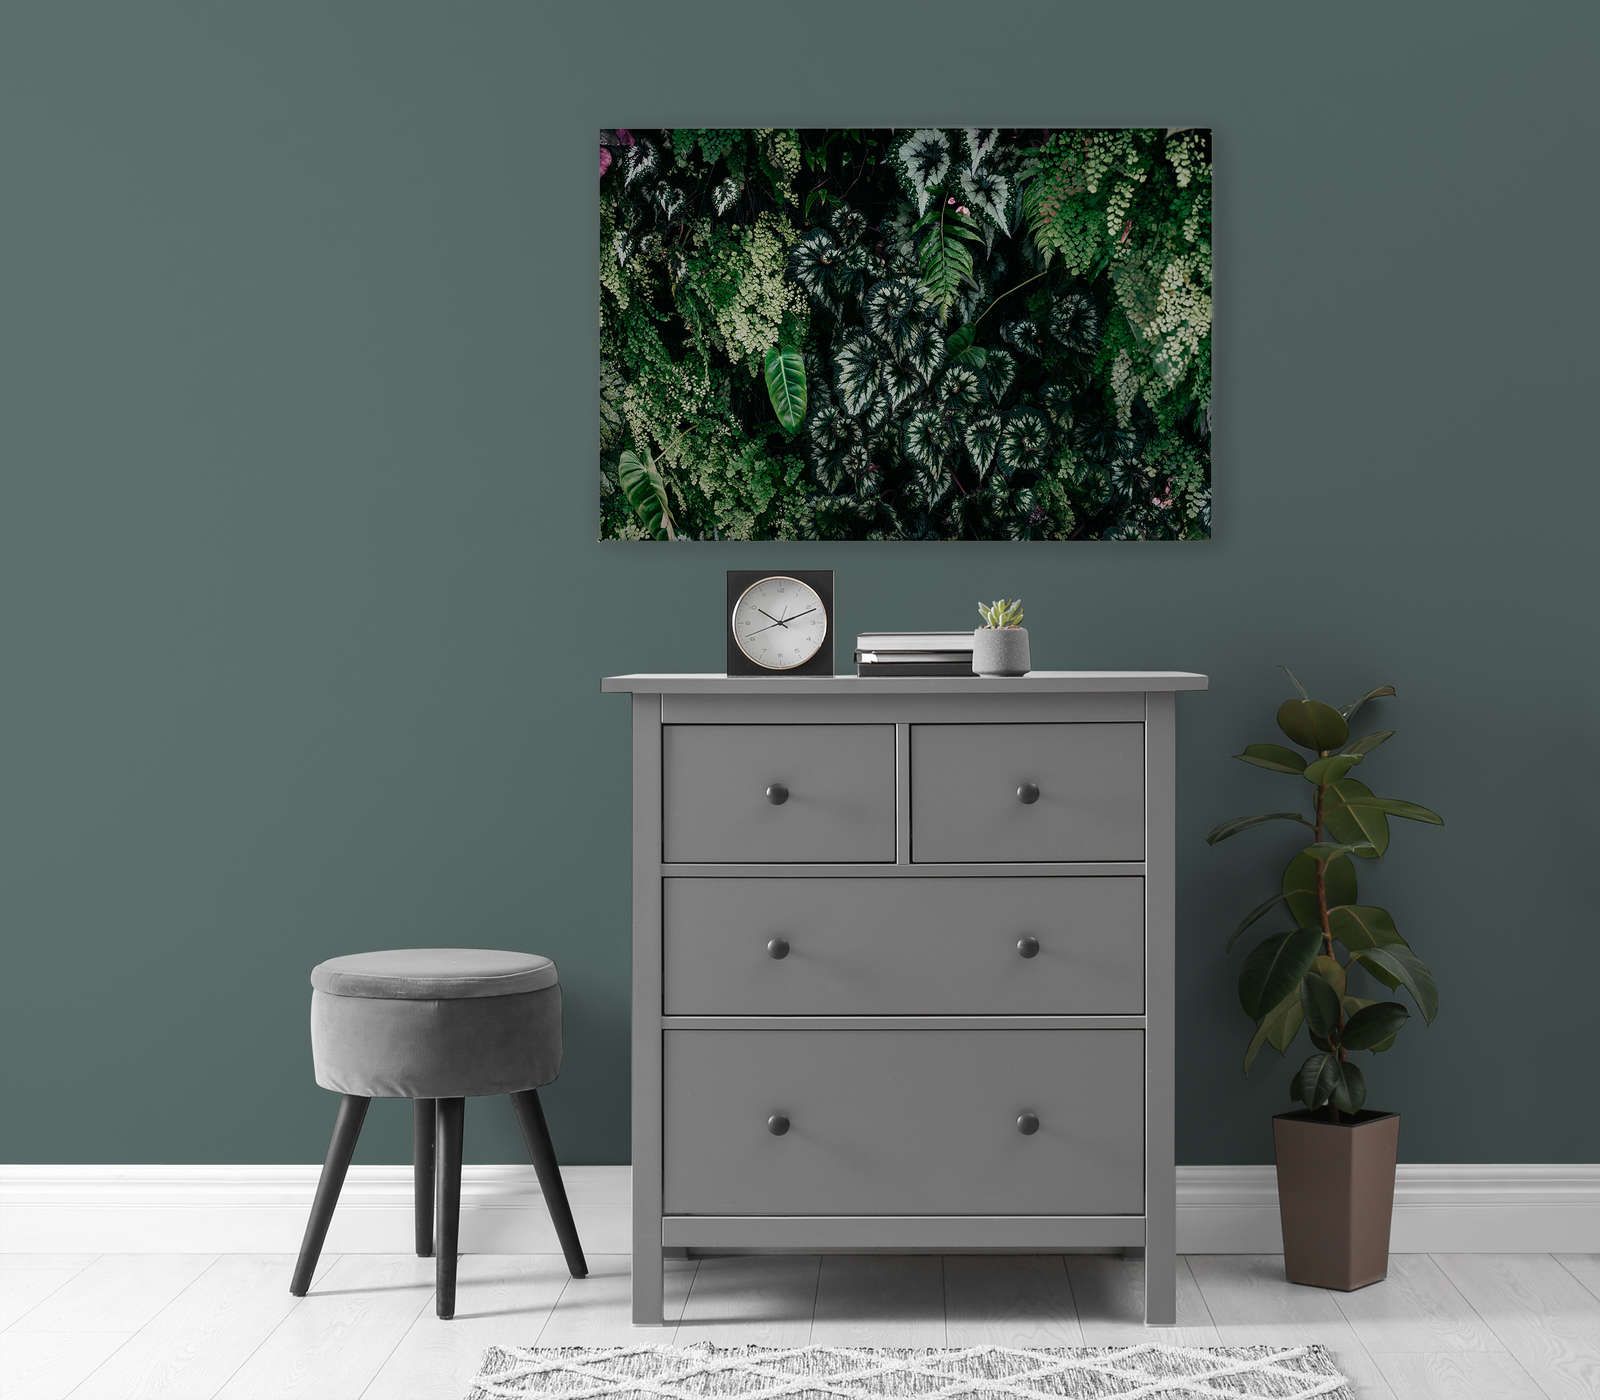             Deep Green 2 - Quadro su tela con foliage, felci e piante pendenti - 0,90 m x 0,60 m
        